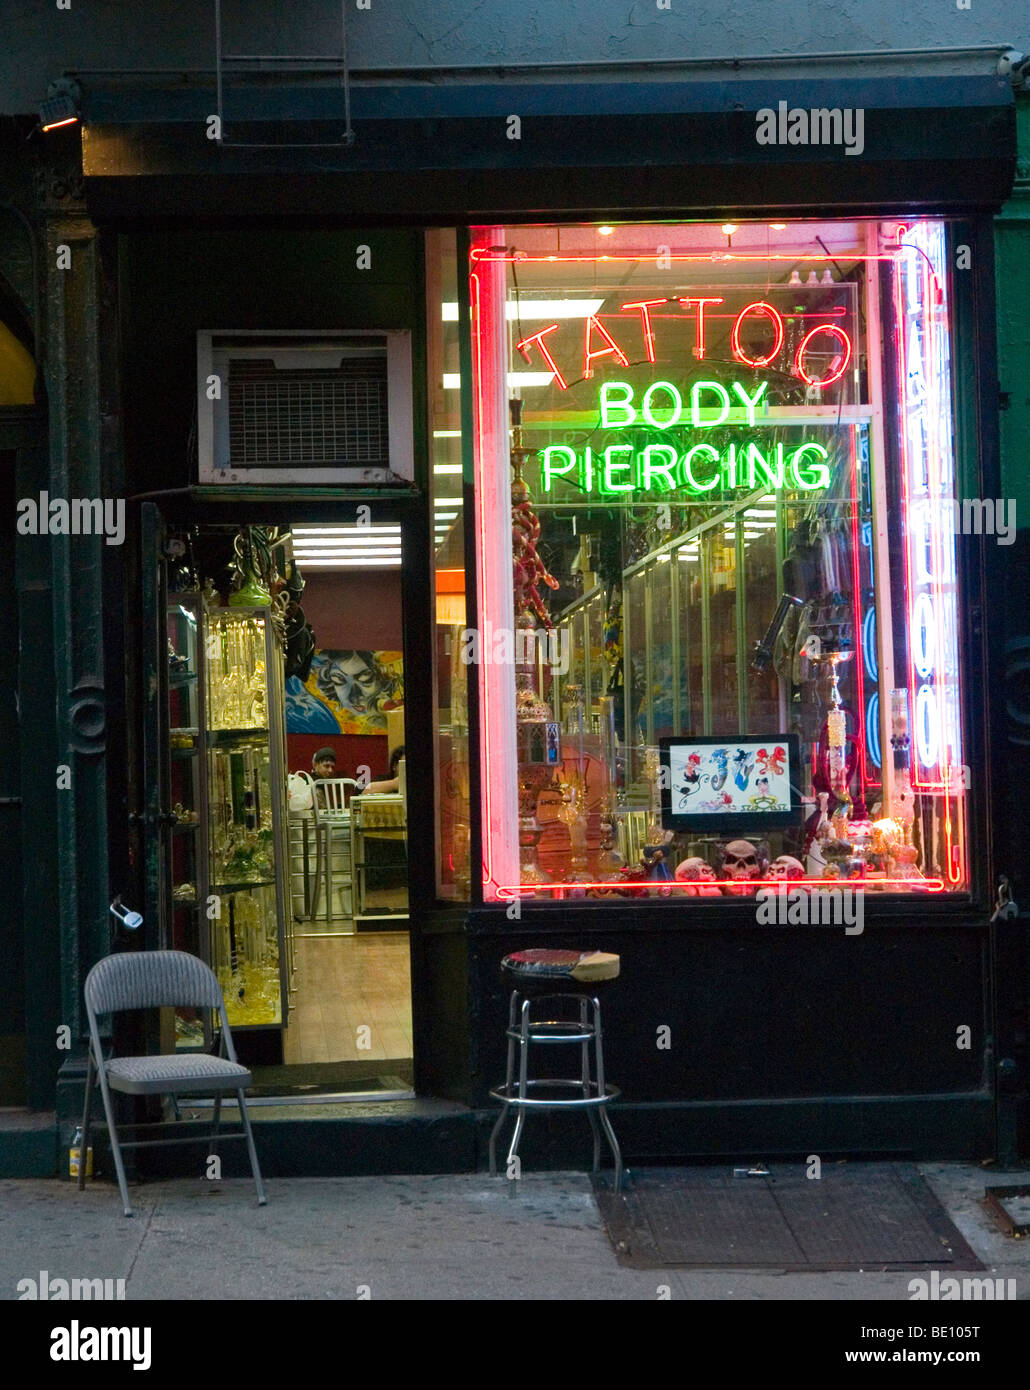 Best Body Piercing Shops in NYC